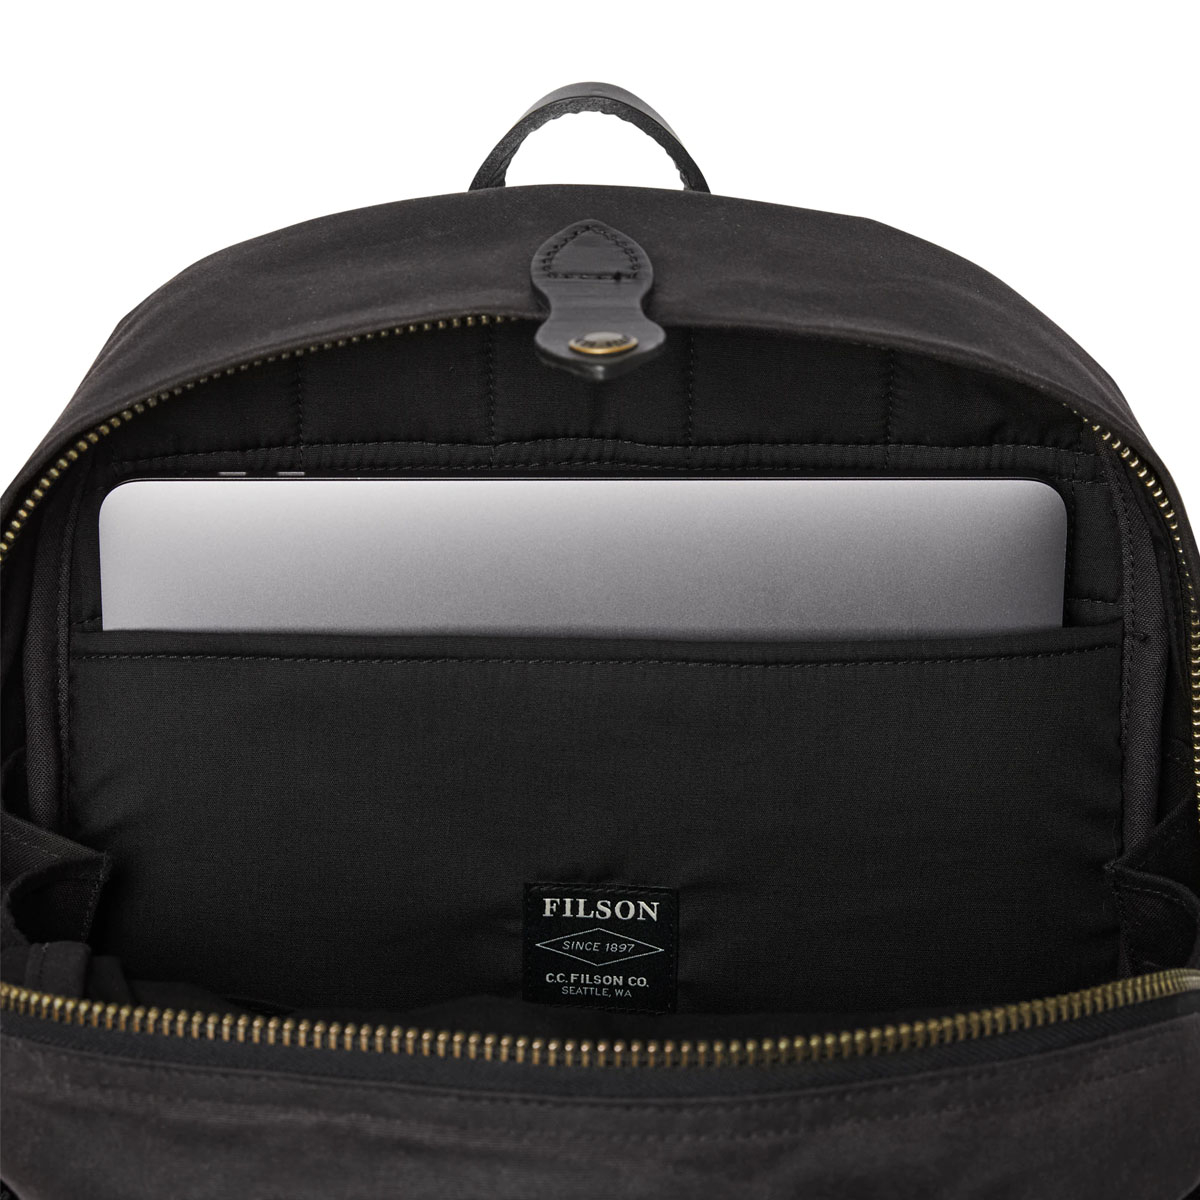 Filson Journeyman Backpack 20231638 Cinder, ook voor zakelijk gebruik met laptop